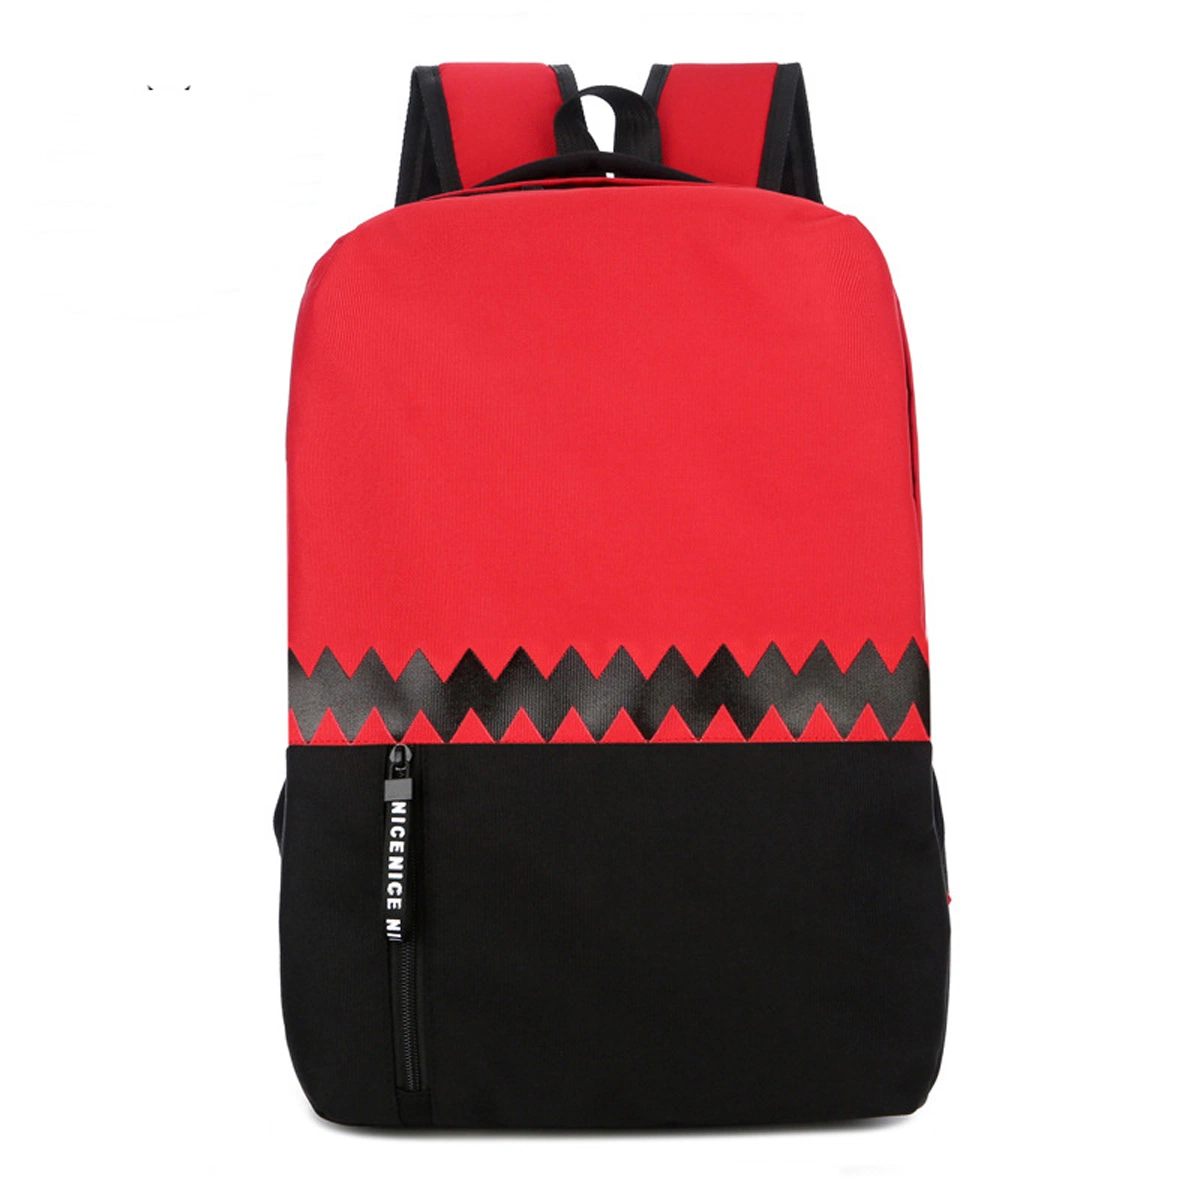 Vogue Tablet Bookbag изолированный игры рюкзак для подростков девочек с помощью одного размера / Ноутбук Ultrabook сумки через плечо красный RS-Cj-1088